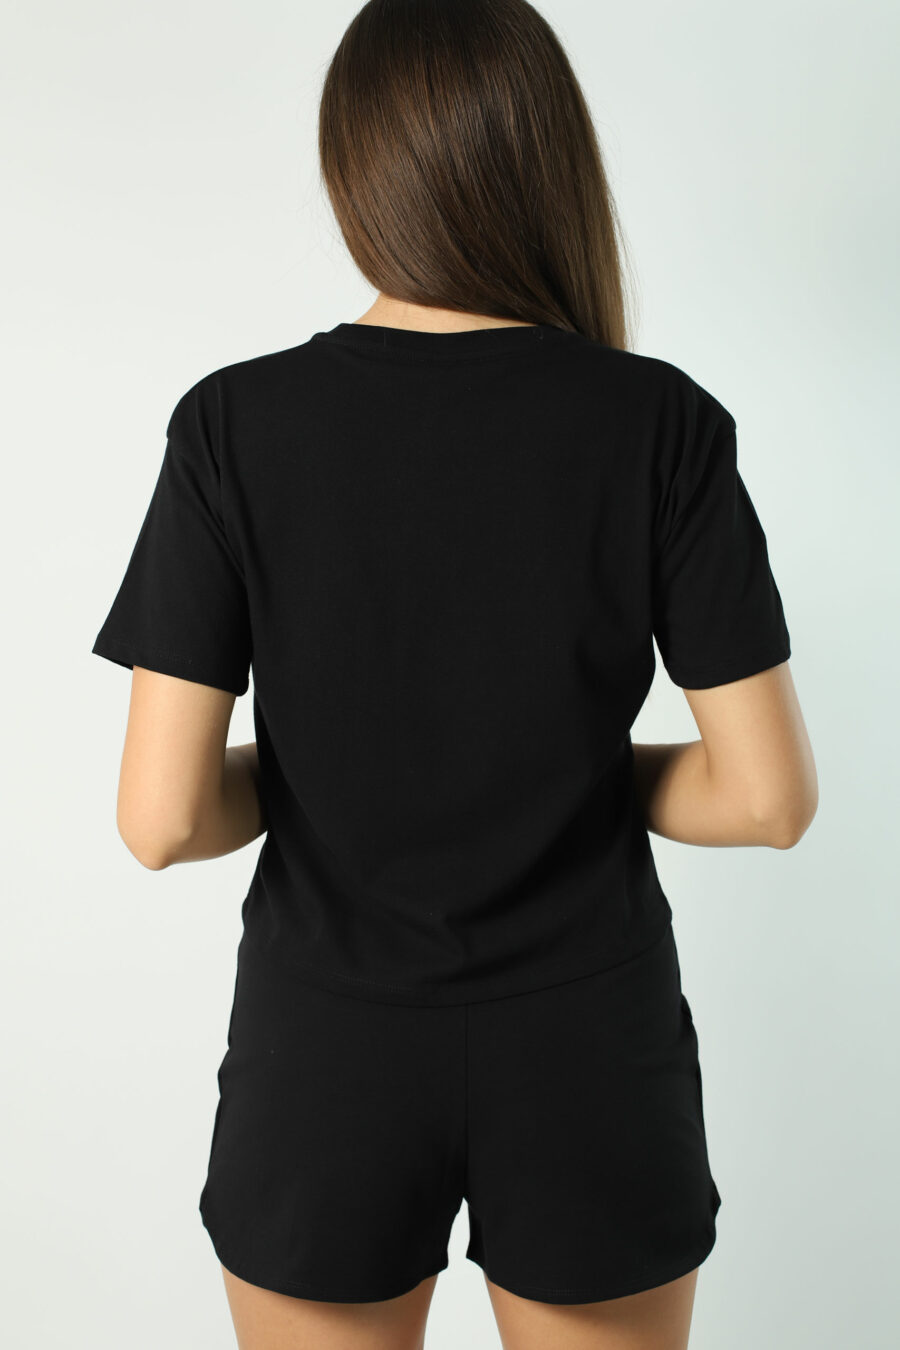 Camiseta negra con minilogo "animal print" - Photos 2355